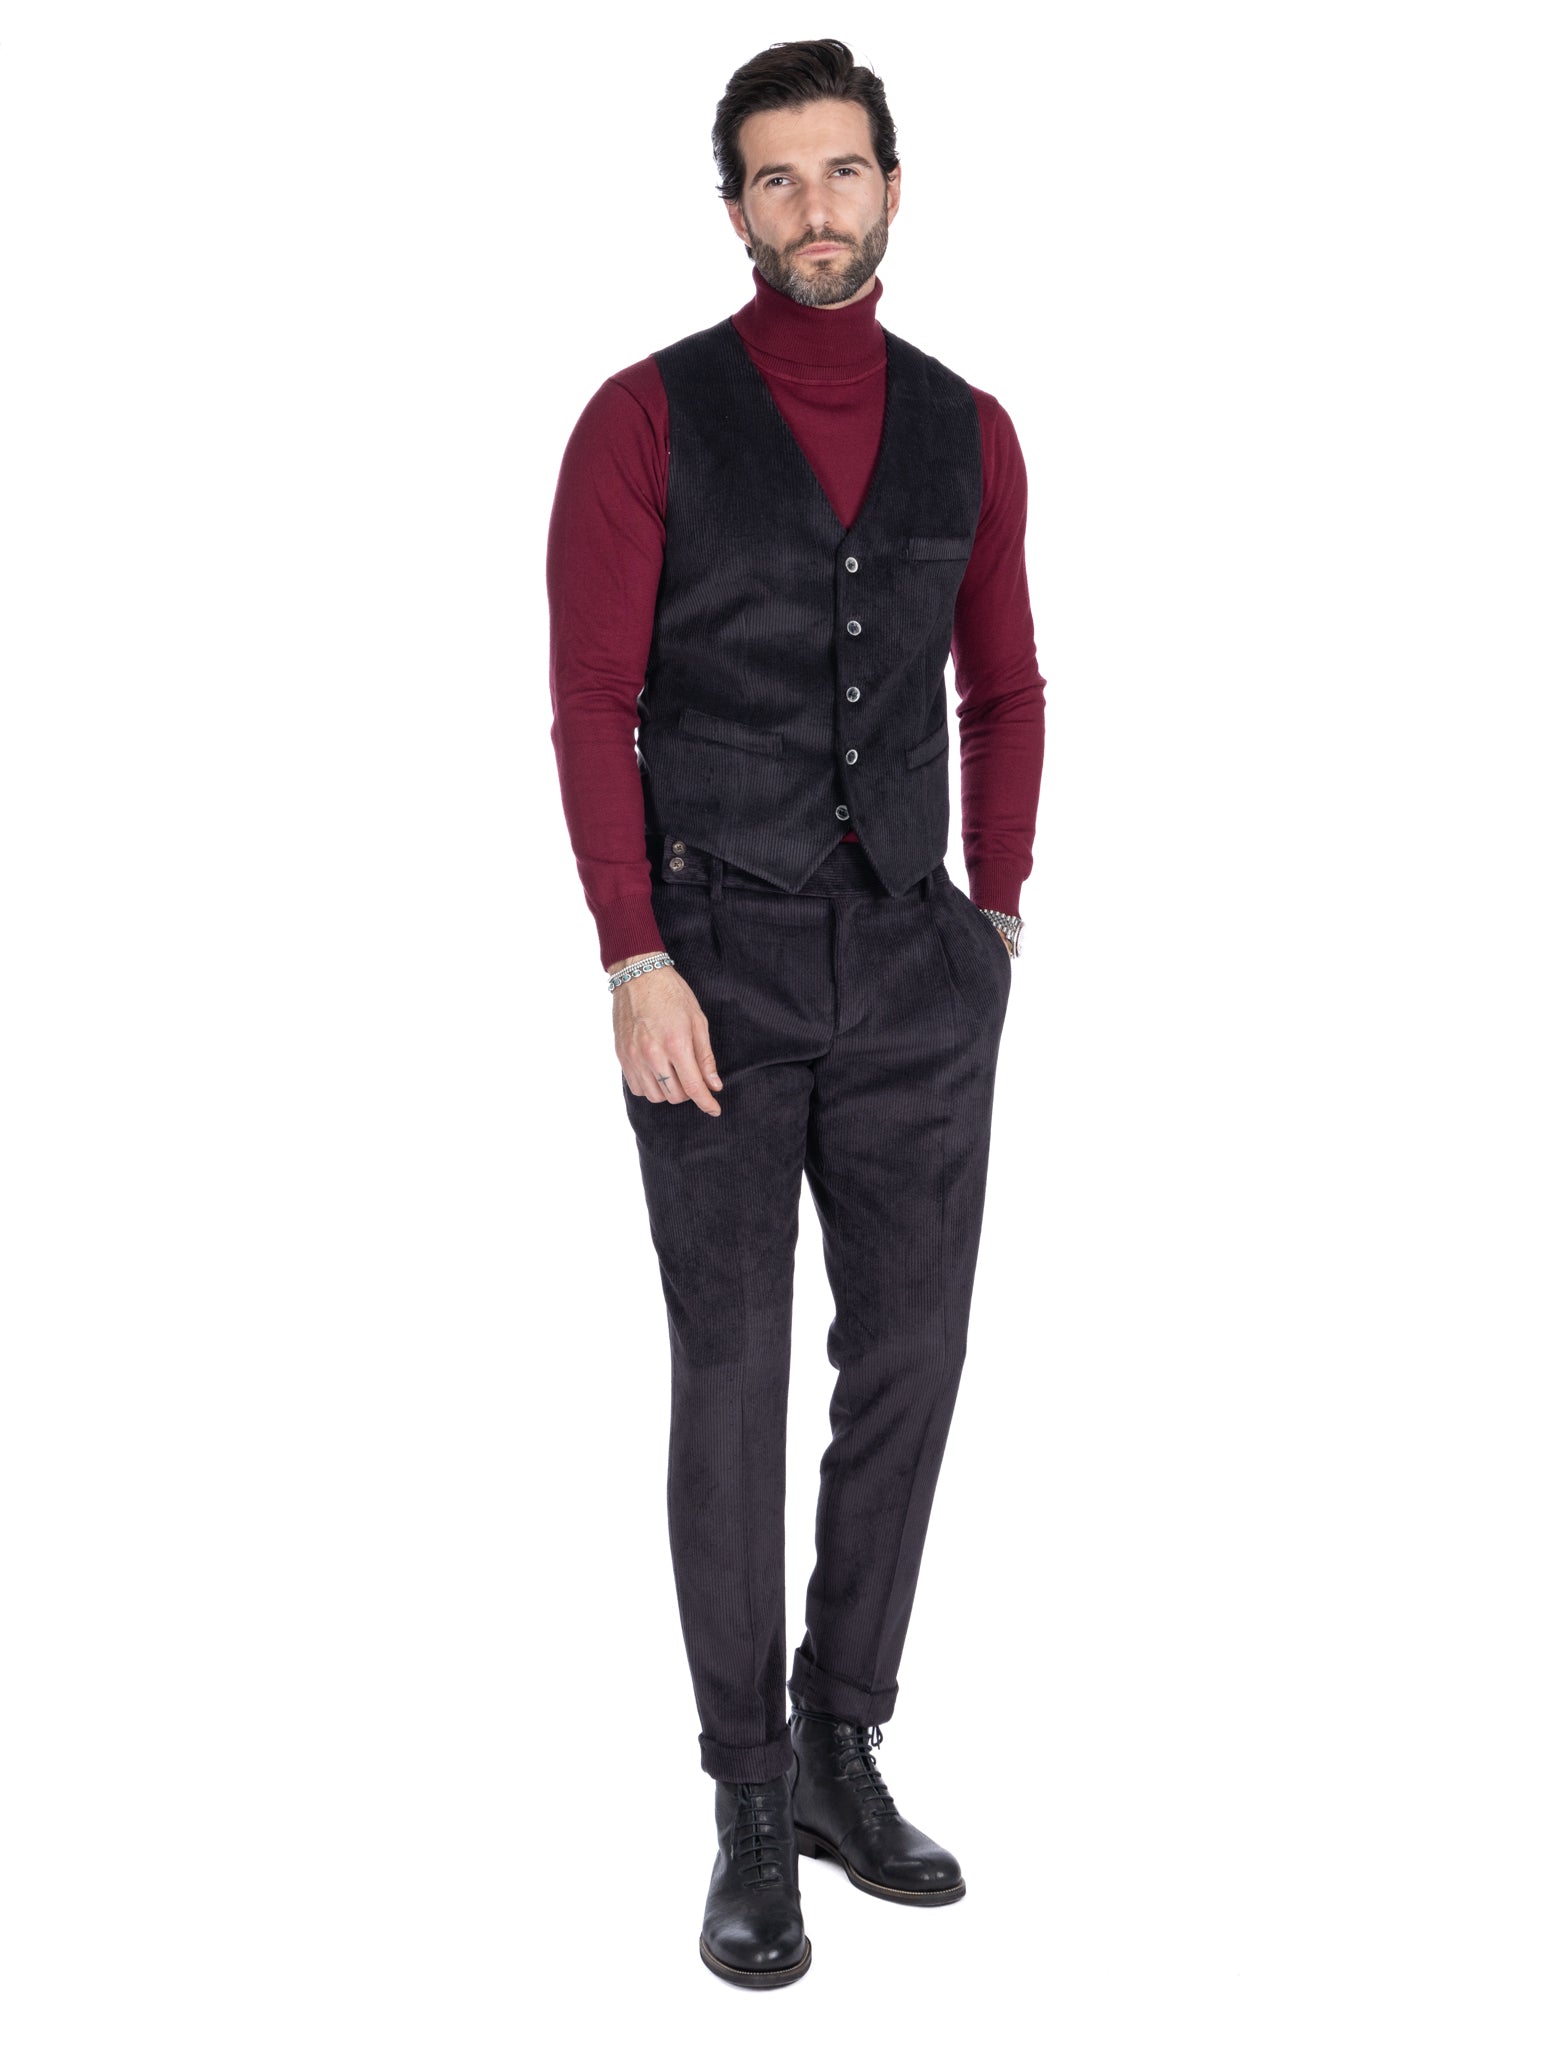 Italian - black high-waisted velvet trousers